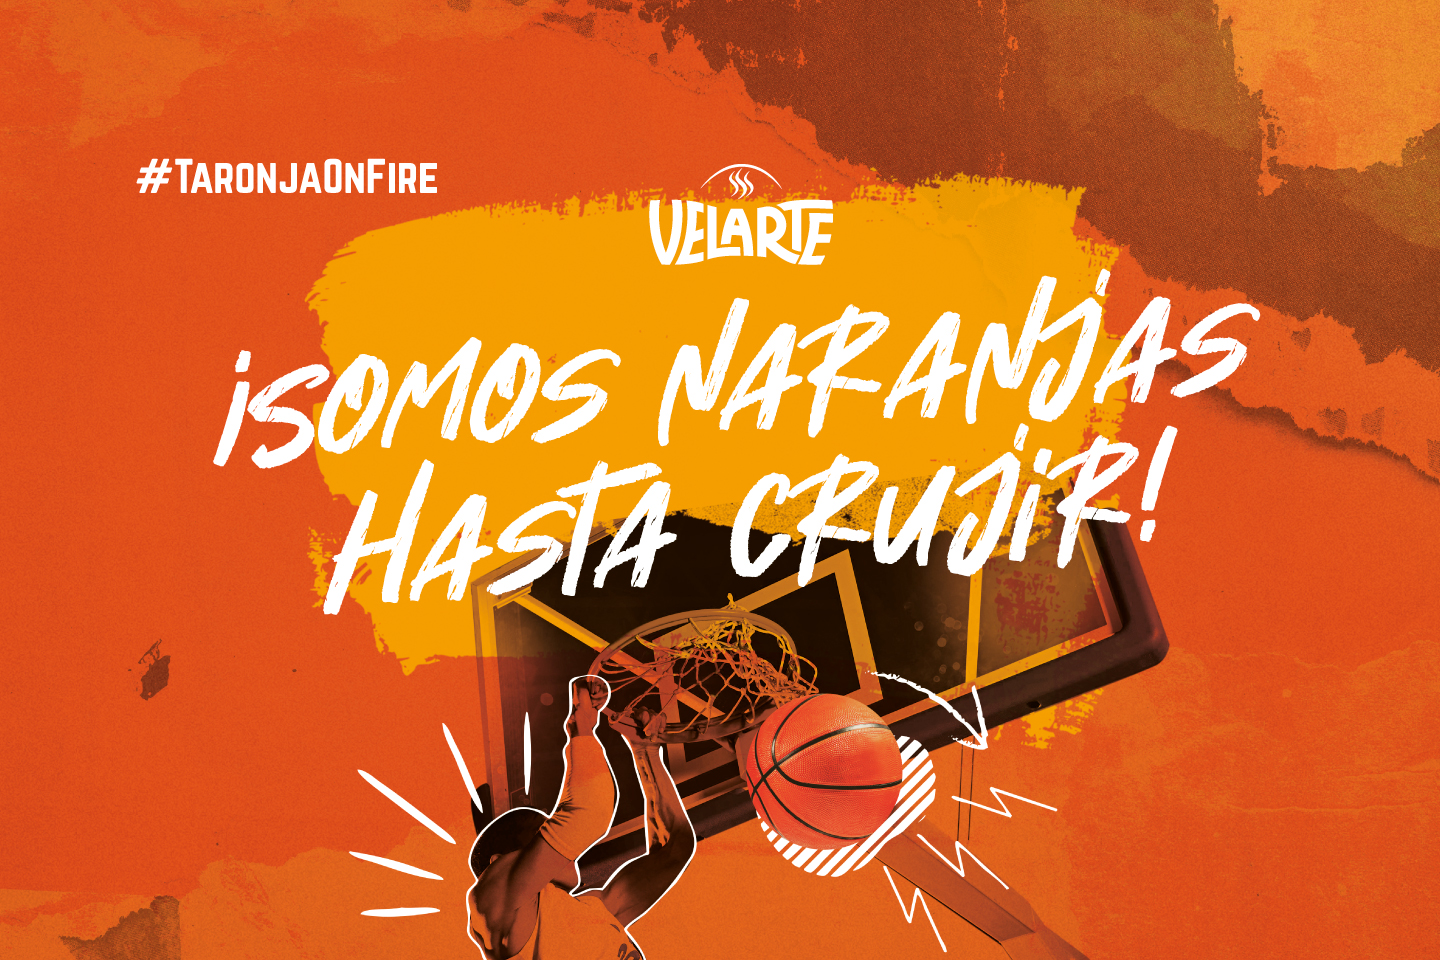 Destacado proyecto Velarte acción Valencia Basket